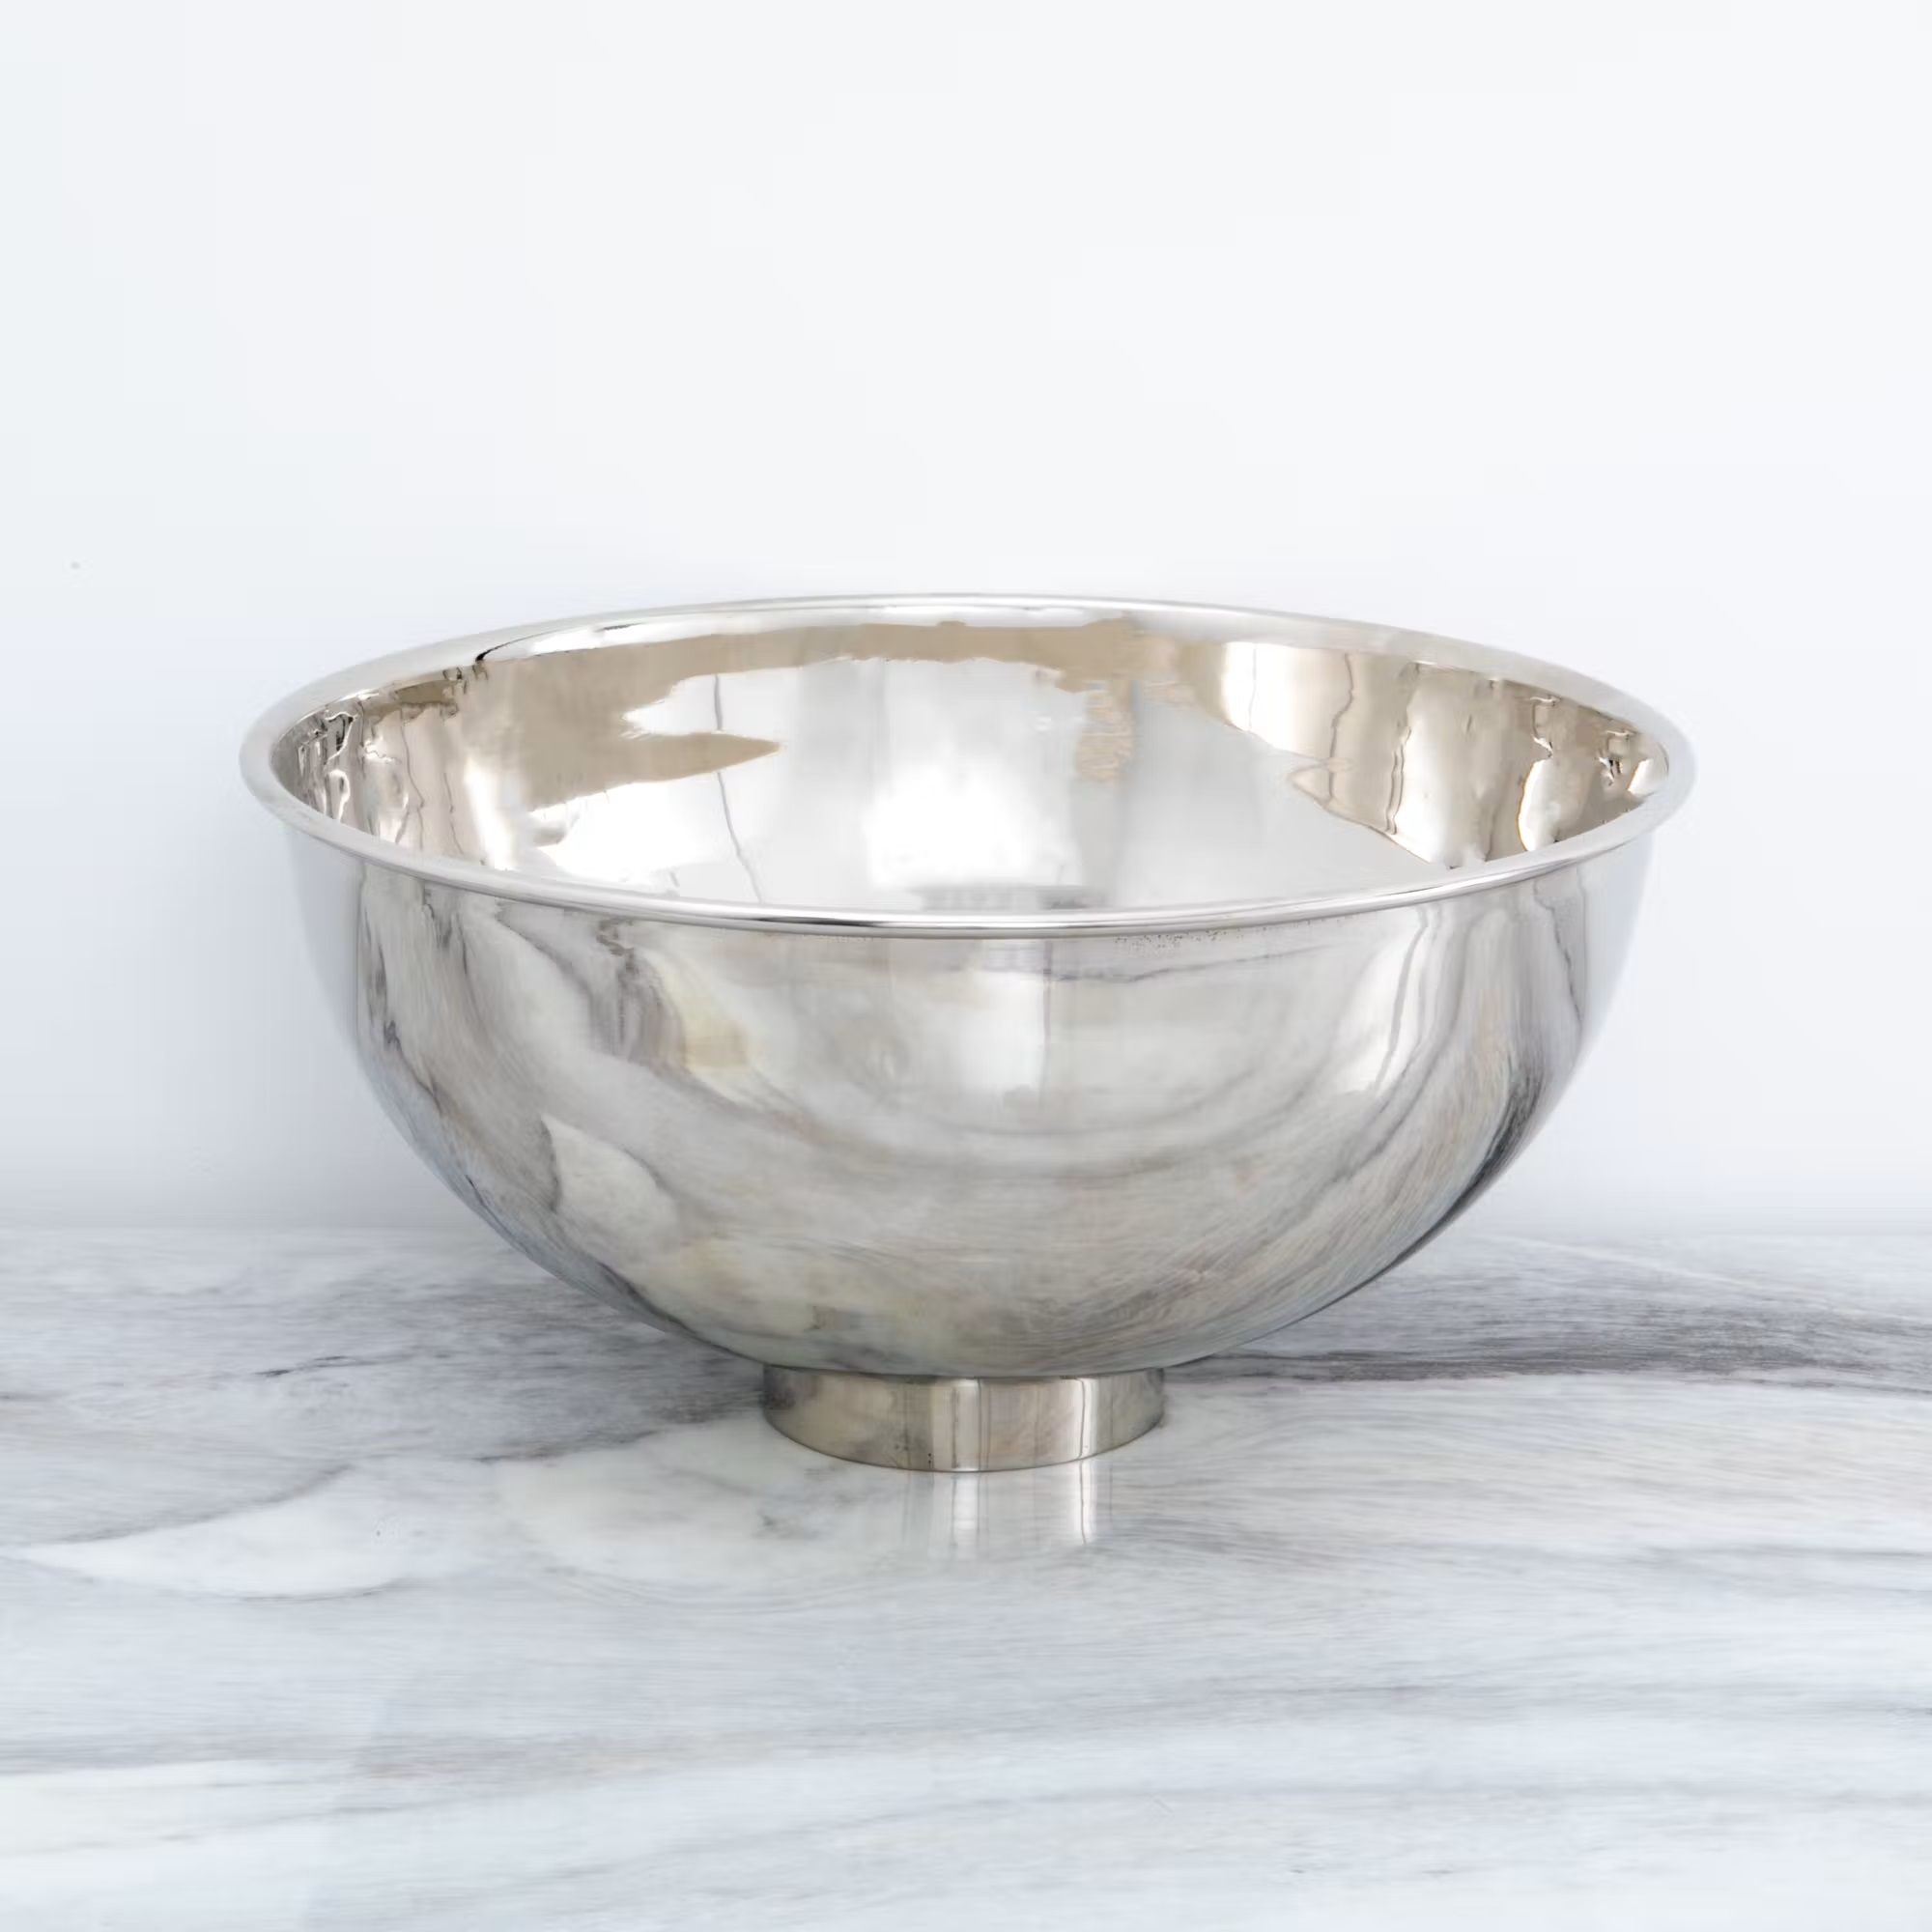 Edle Schale Silber auf Fuß Obstschale Chrom Vase Aluminium